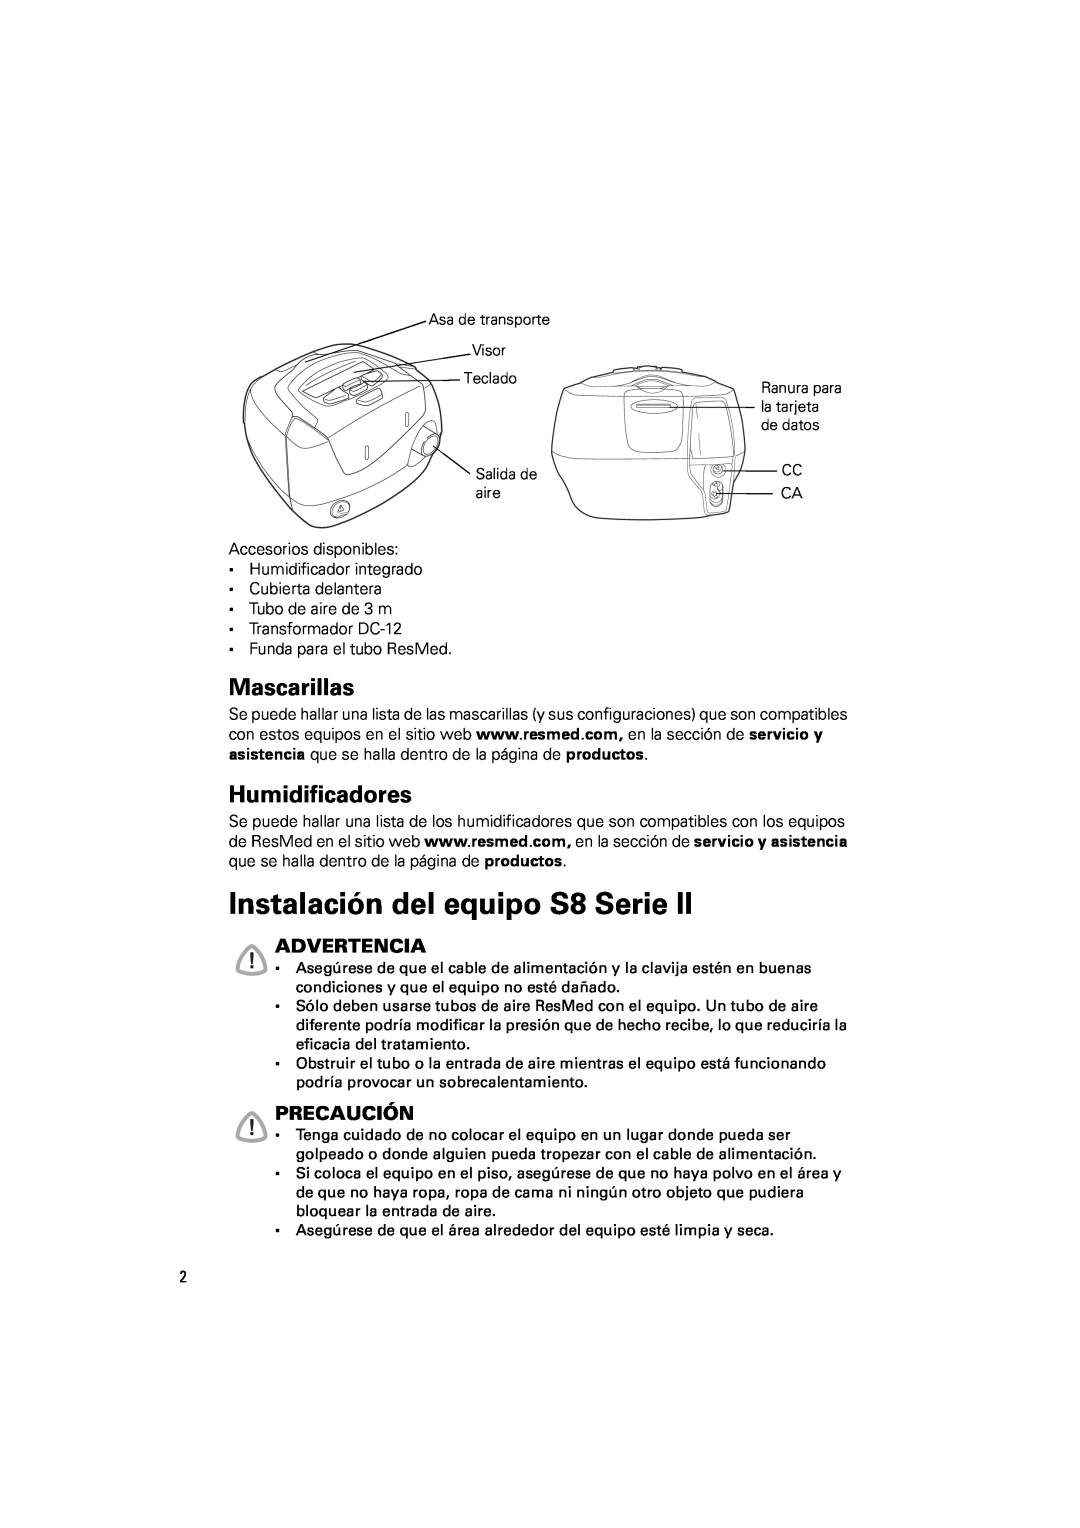 ResMed s8 manual Instalación del equipo S8 Serie, Mascarillas, Humidificadores, Advertencia, Precaución 